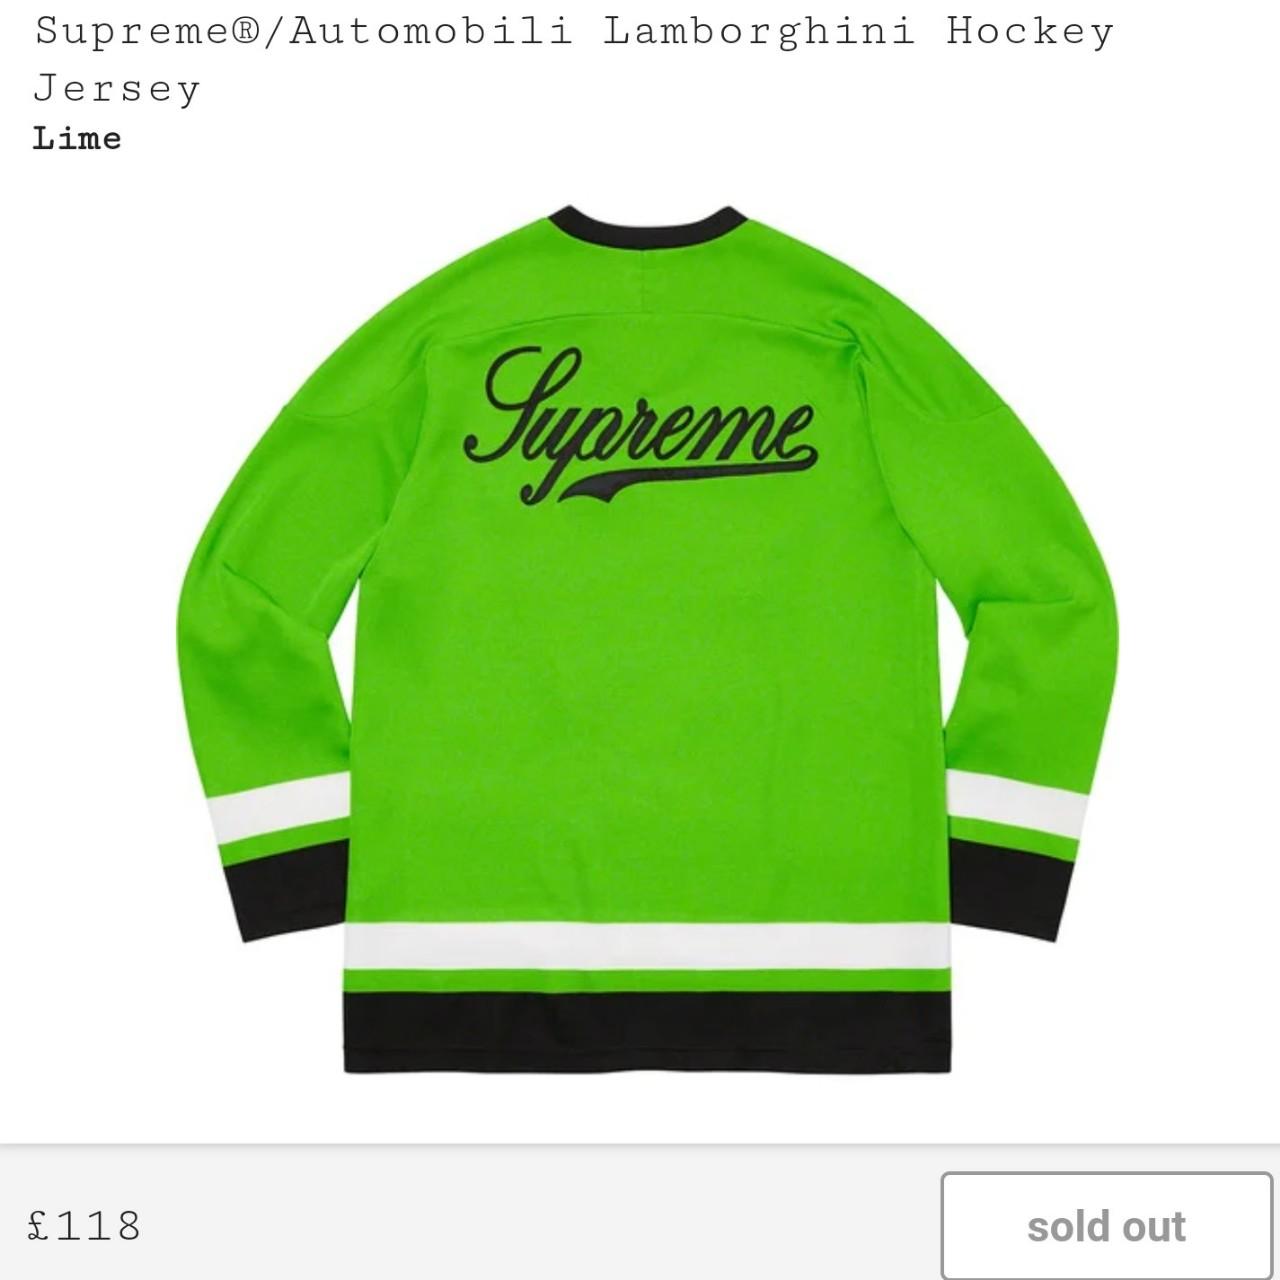 Supreme®/Automobili Lamborghini Hockey Jersey Style:... - Depop